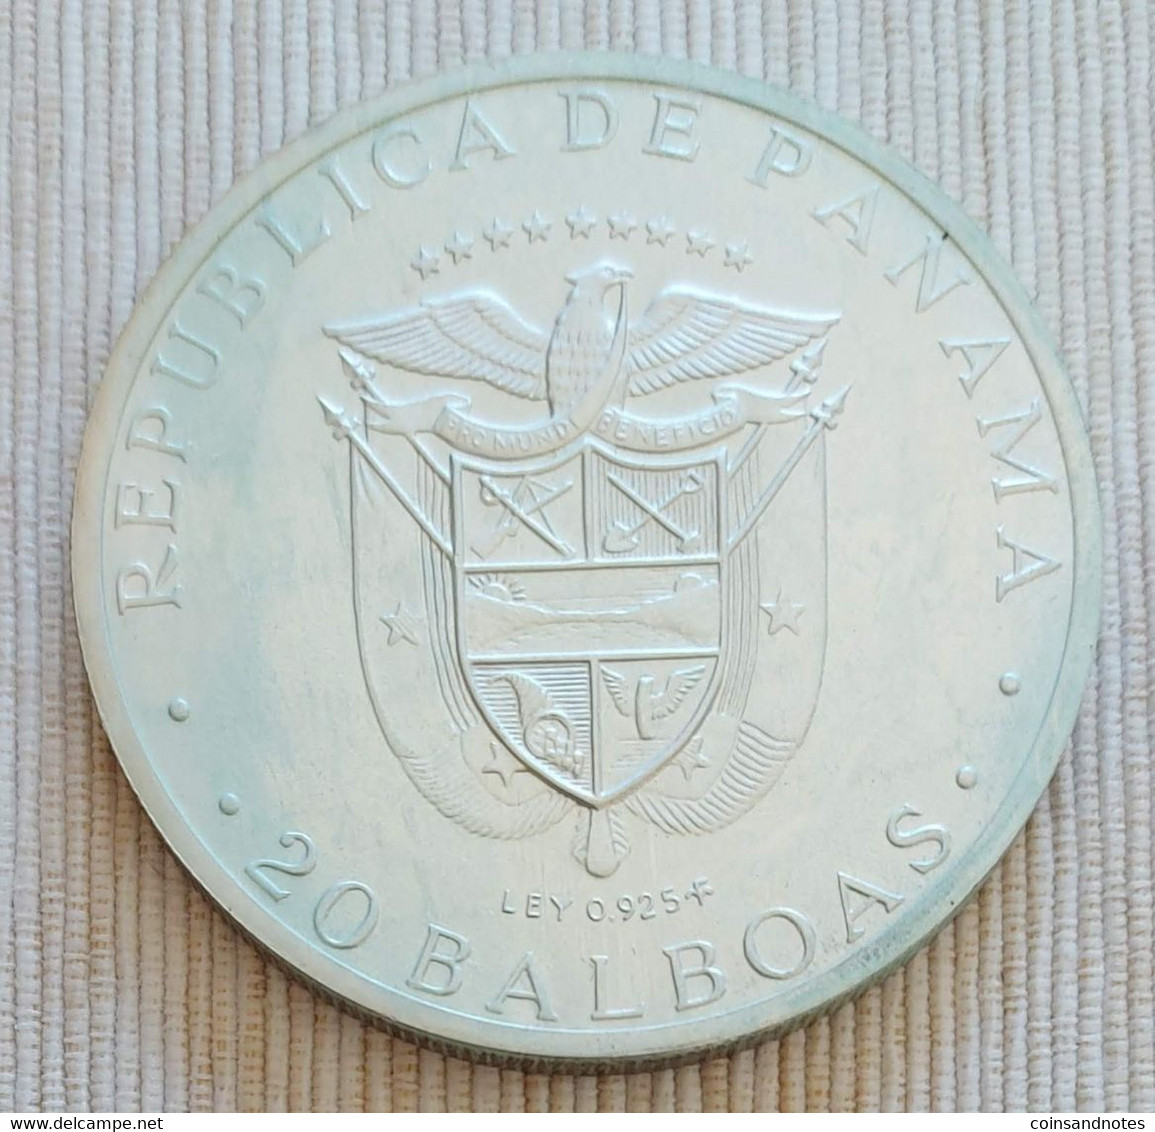 Panama 1973 - 20 Balboas - Simón Bolívar (1783-1830) - .925 Silver - KM# 31 - Autres – Amérique